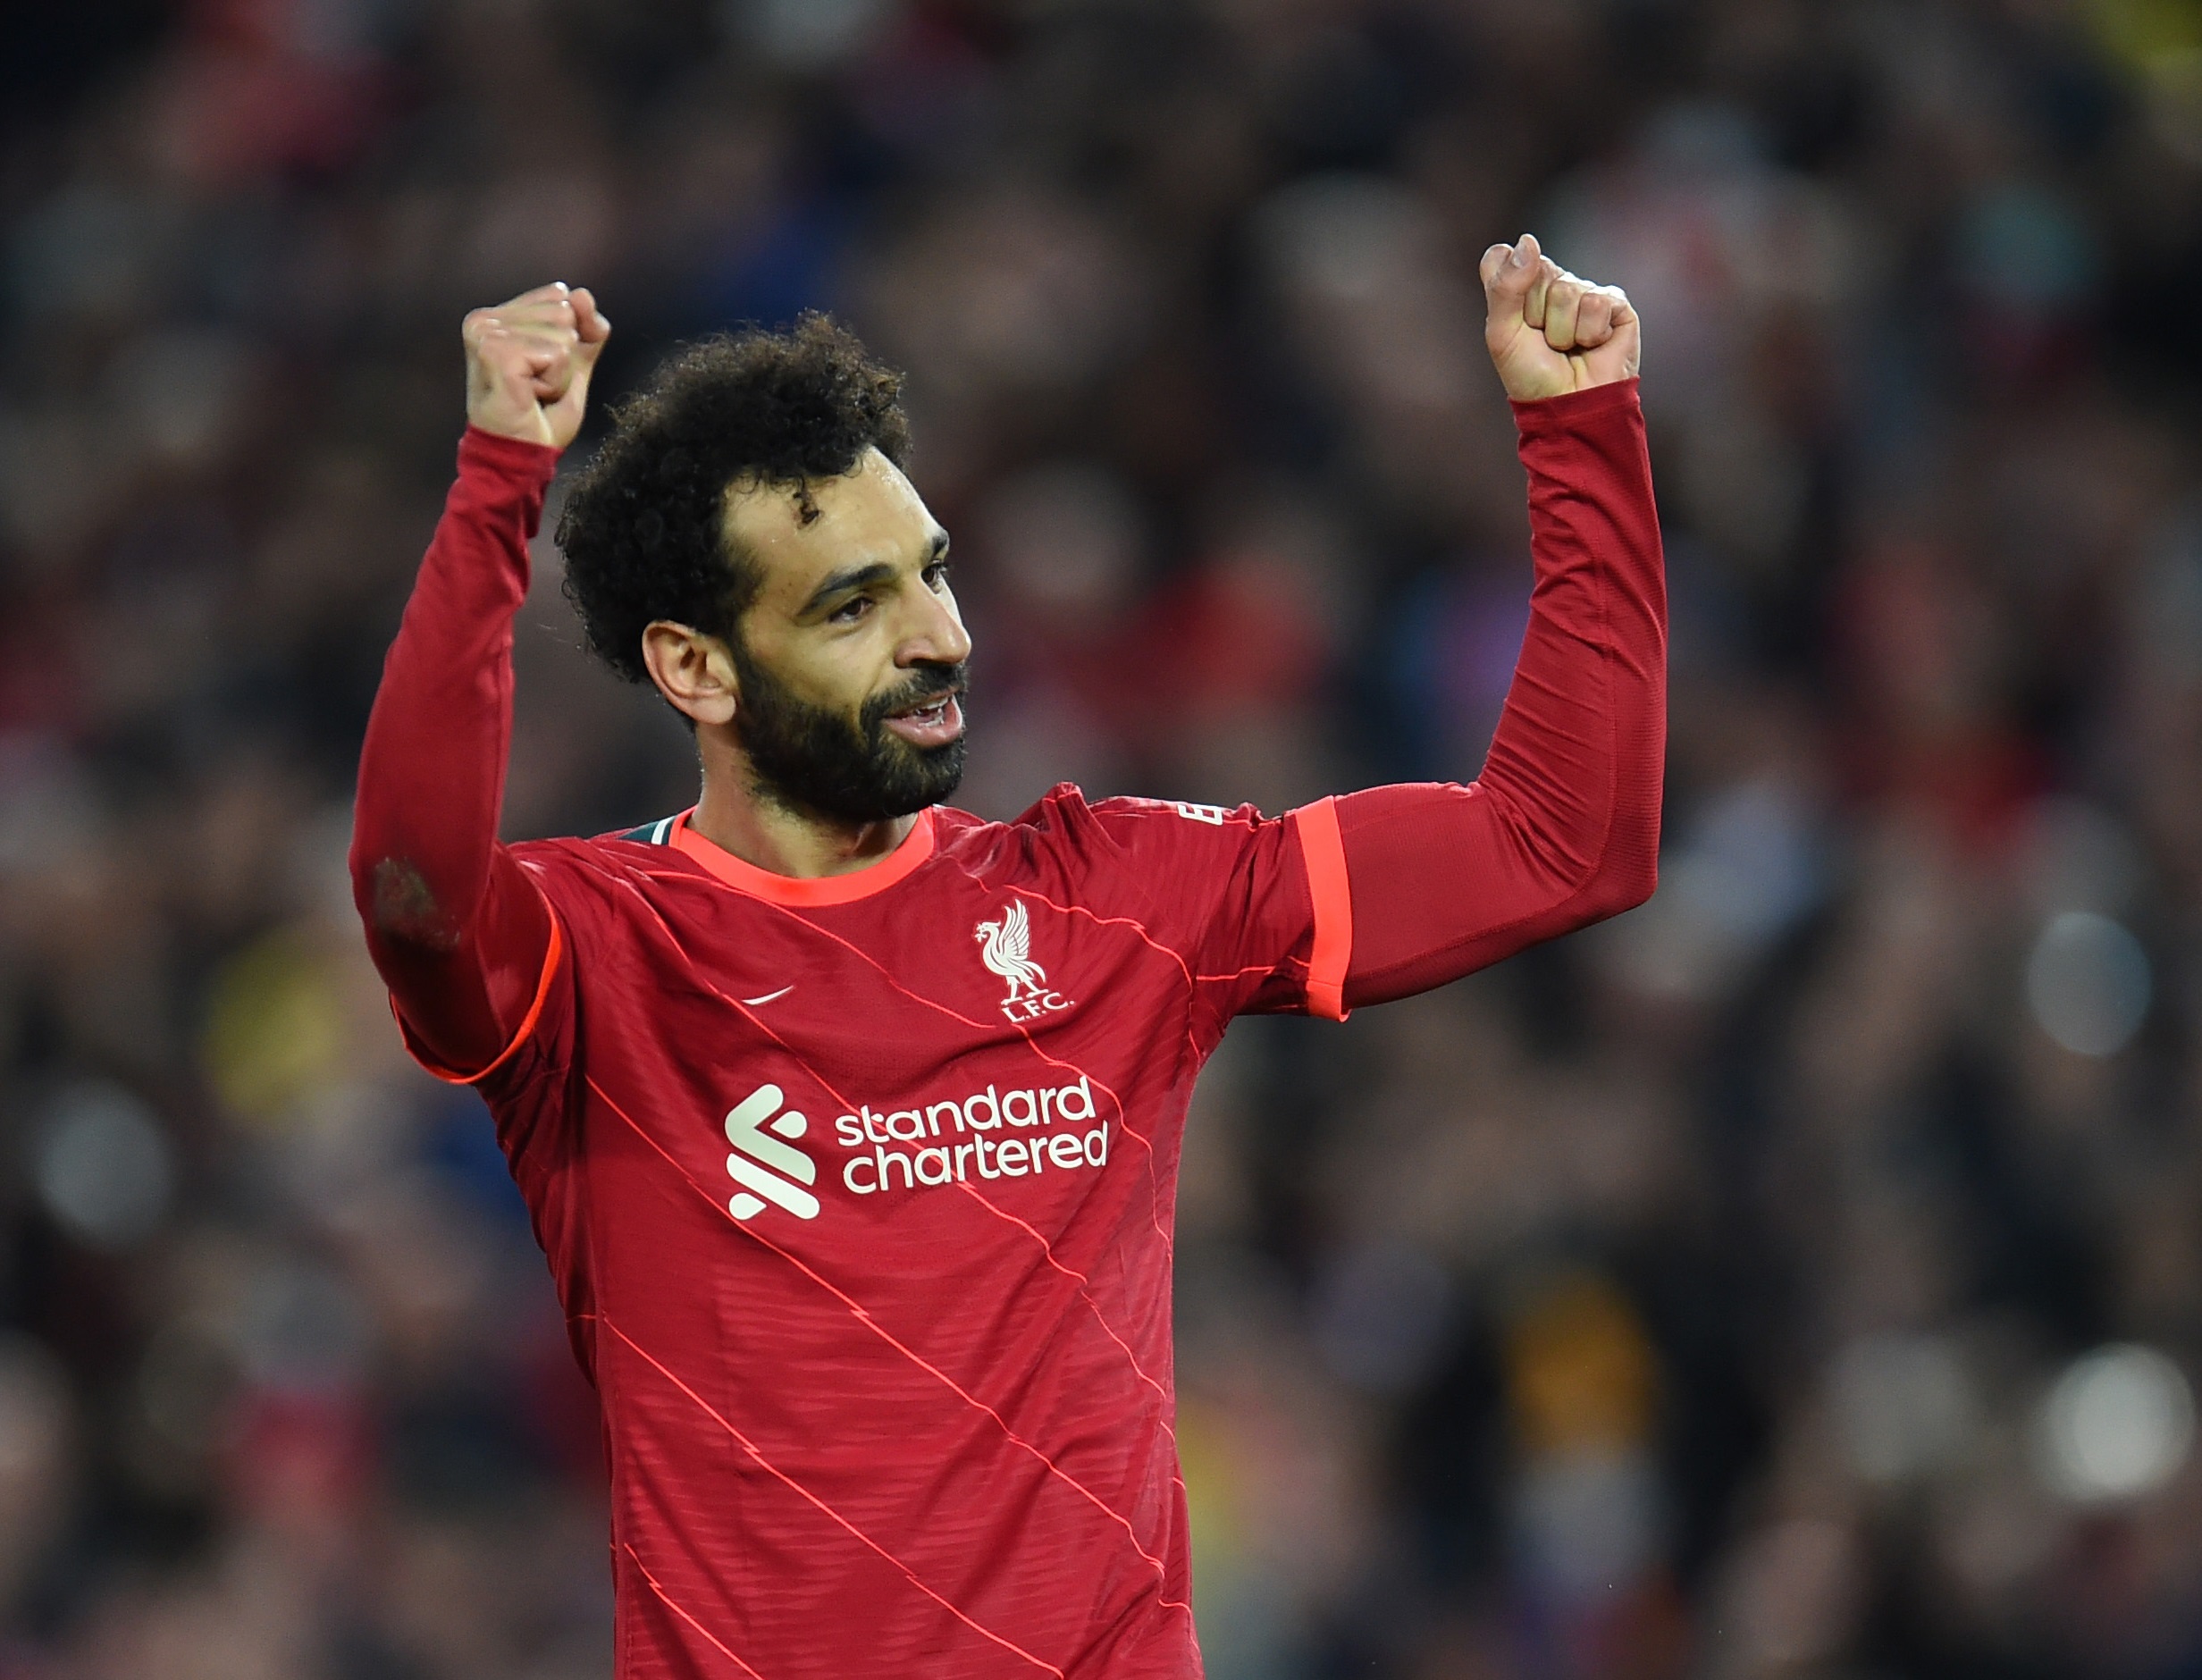 Liverpool não vê renovação de Salah como prioridade imediata